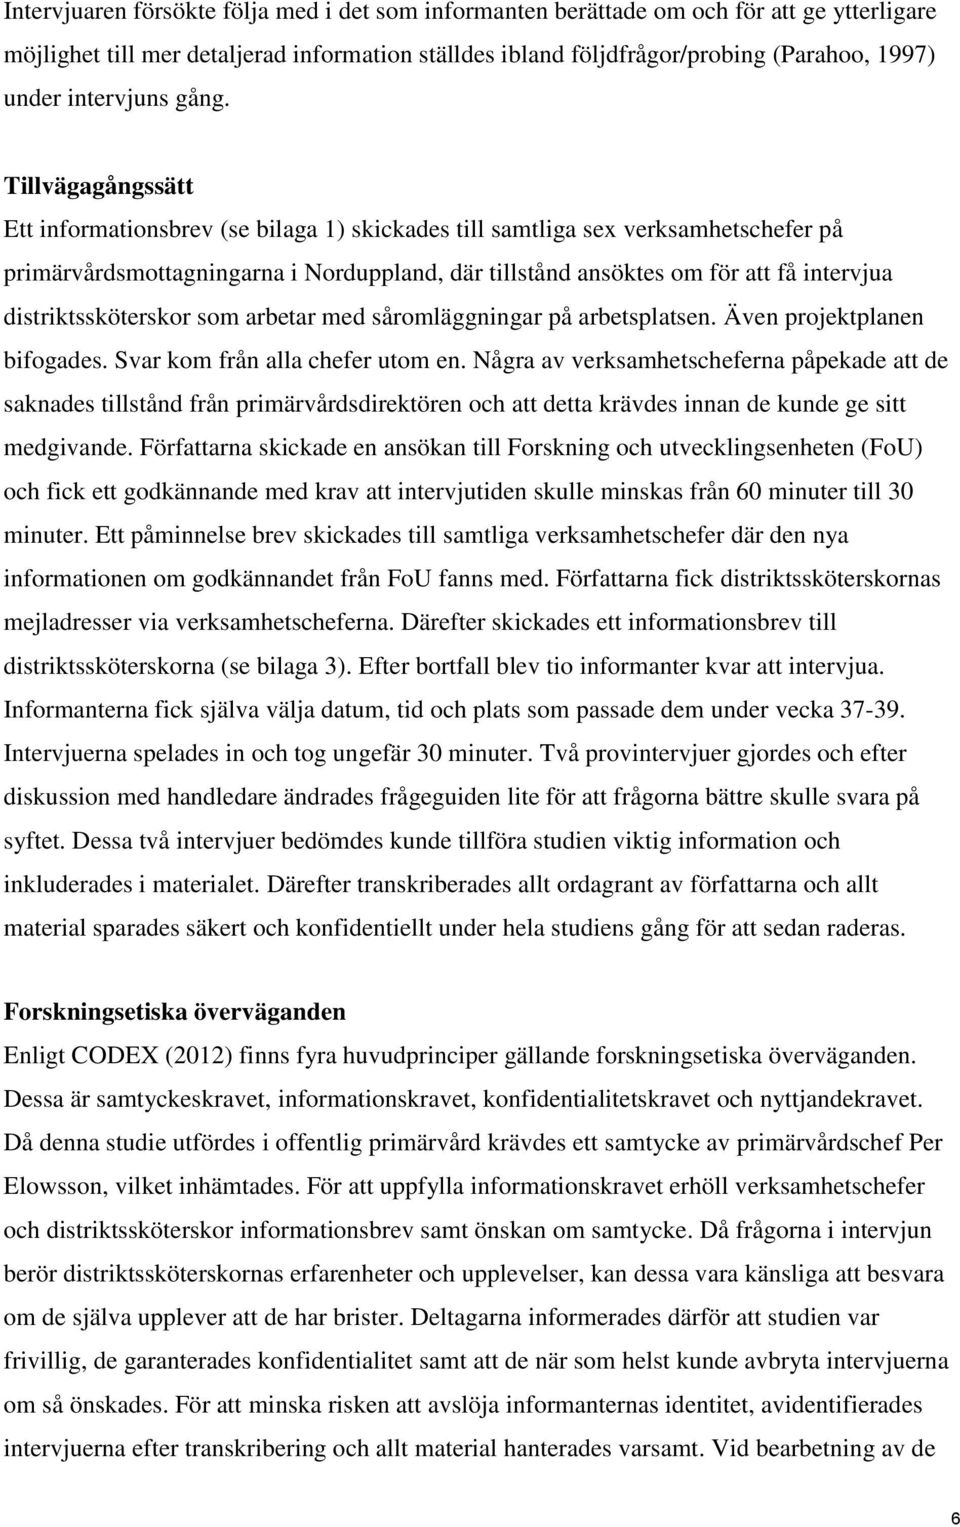 Tillvägagångssätt Ett informationsbrev (se bilaga 1) skickades till samtliga sex verksamhetschefer på primärvårdsmottagningarna i Norduppland, där tillstånd ansöktes om för att få intervjua